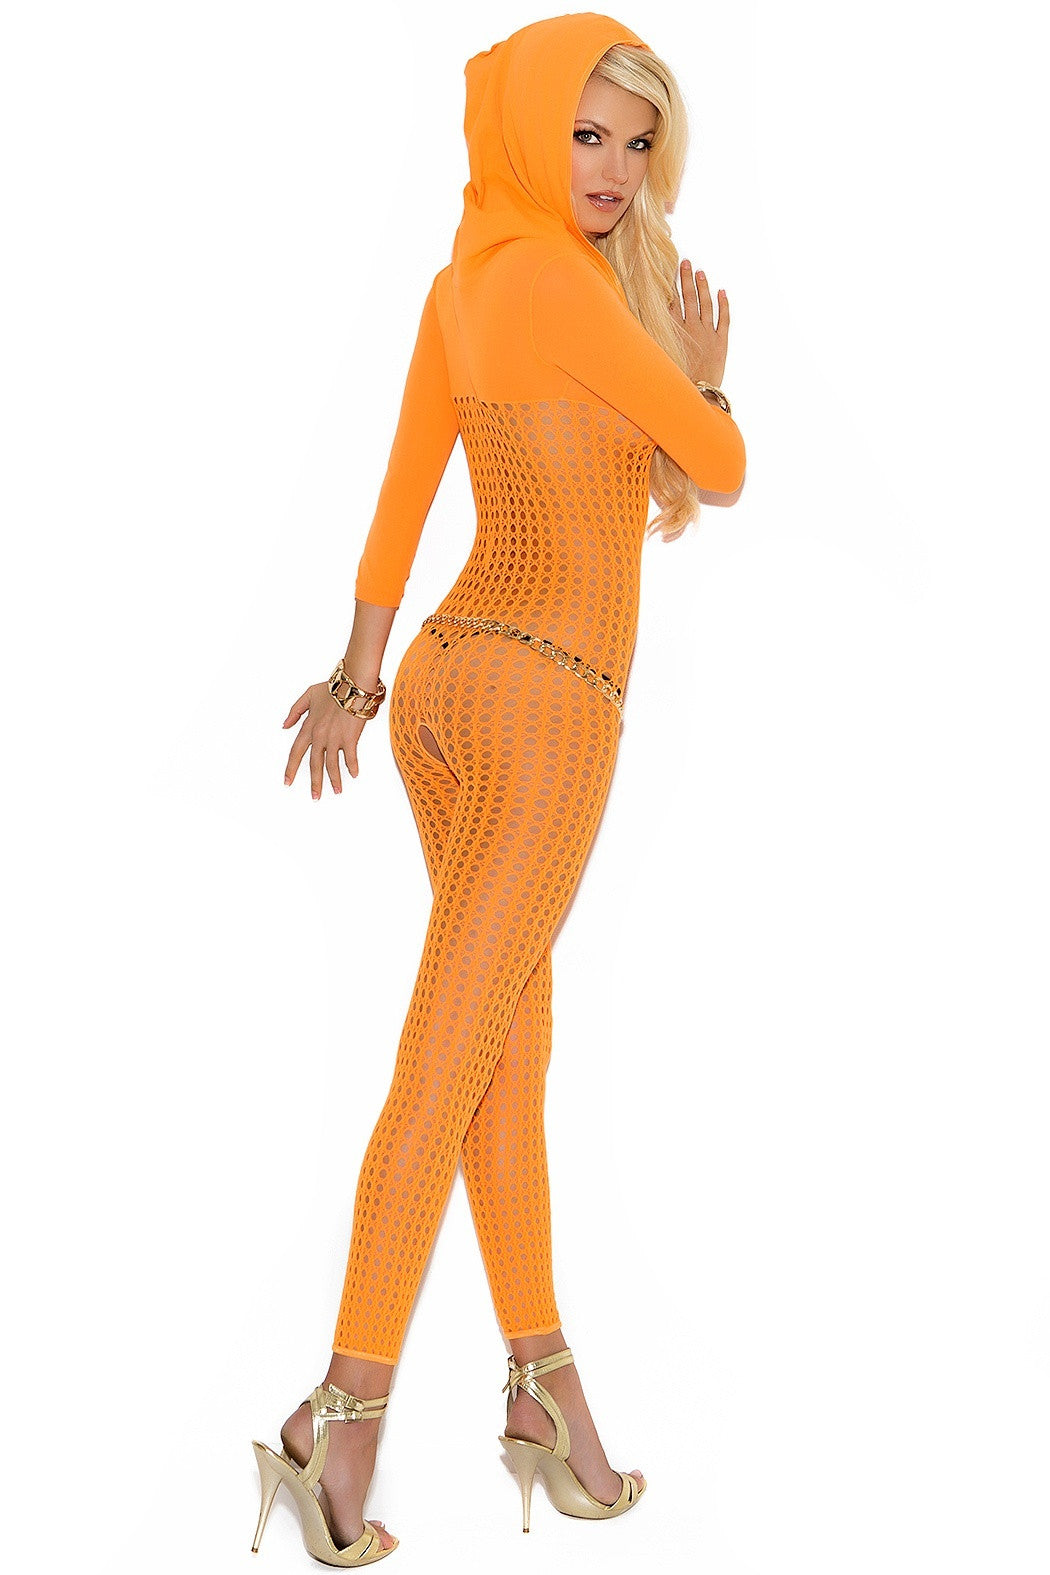 EM-8011 Orange bodystocking - Sexylingerieland